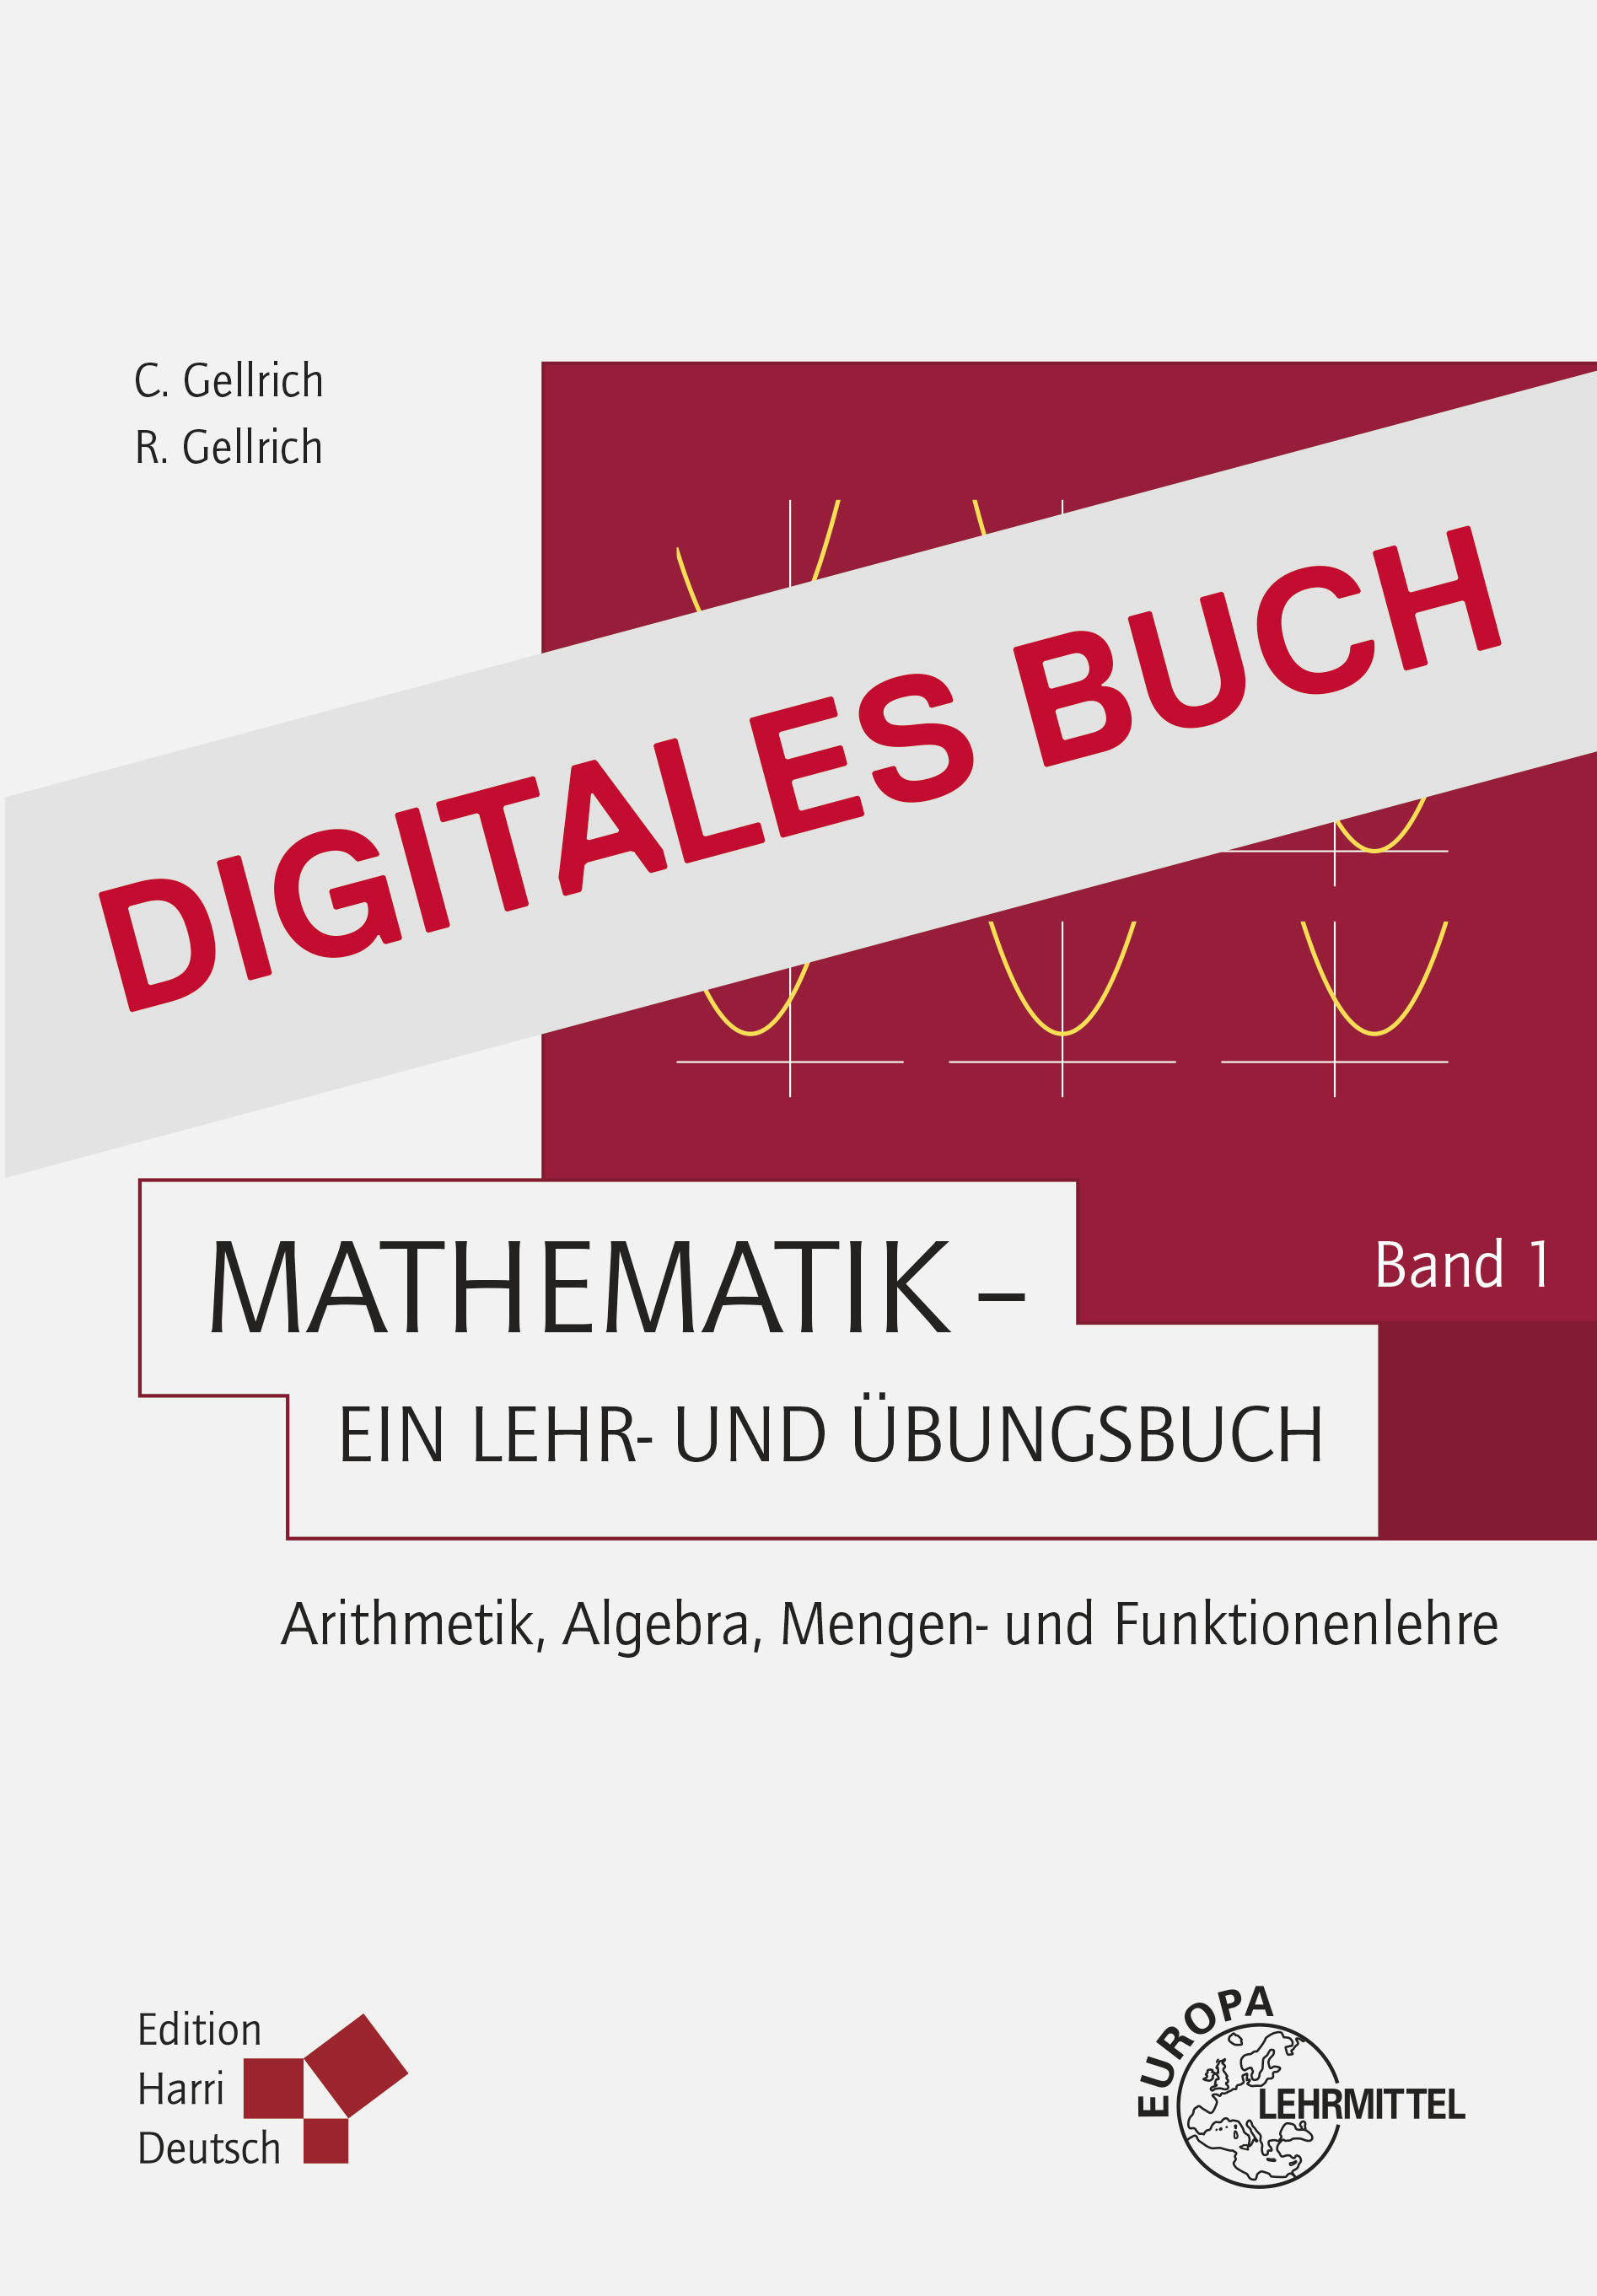 Mathematik - Ein Lehr- und Übungsbuch: Band 1 - Digitales Buch